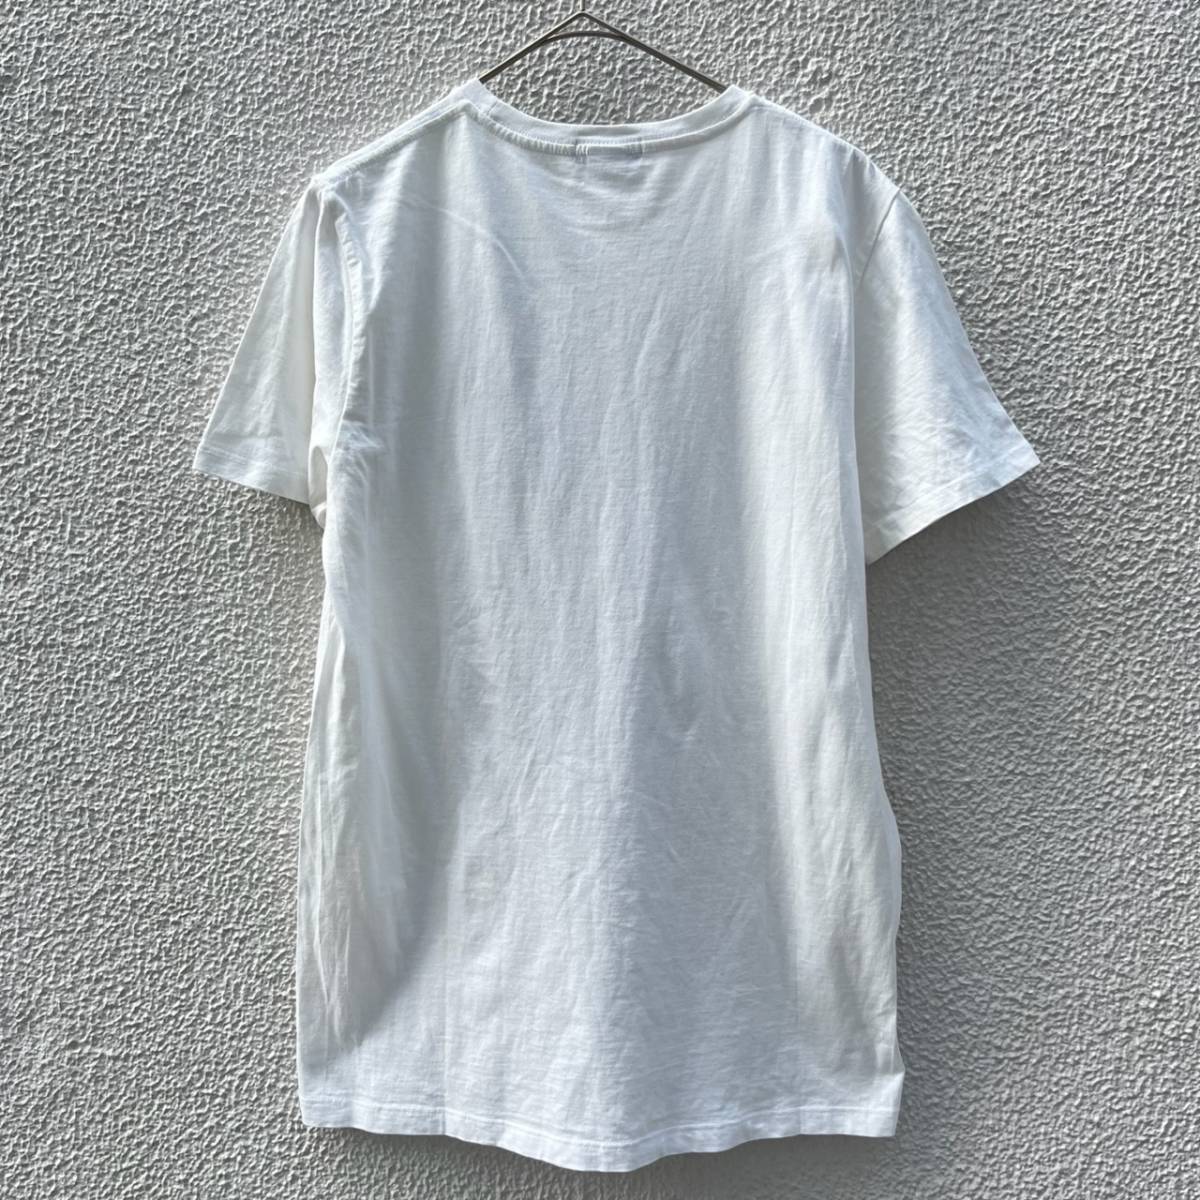 Brinike ブリニケ Lサイズ Tシャツ 無地 半袖 ホワイト